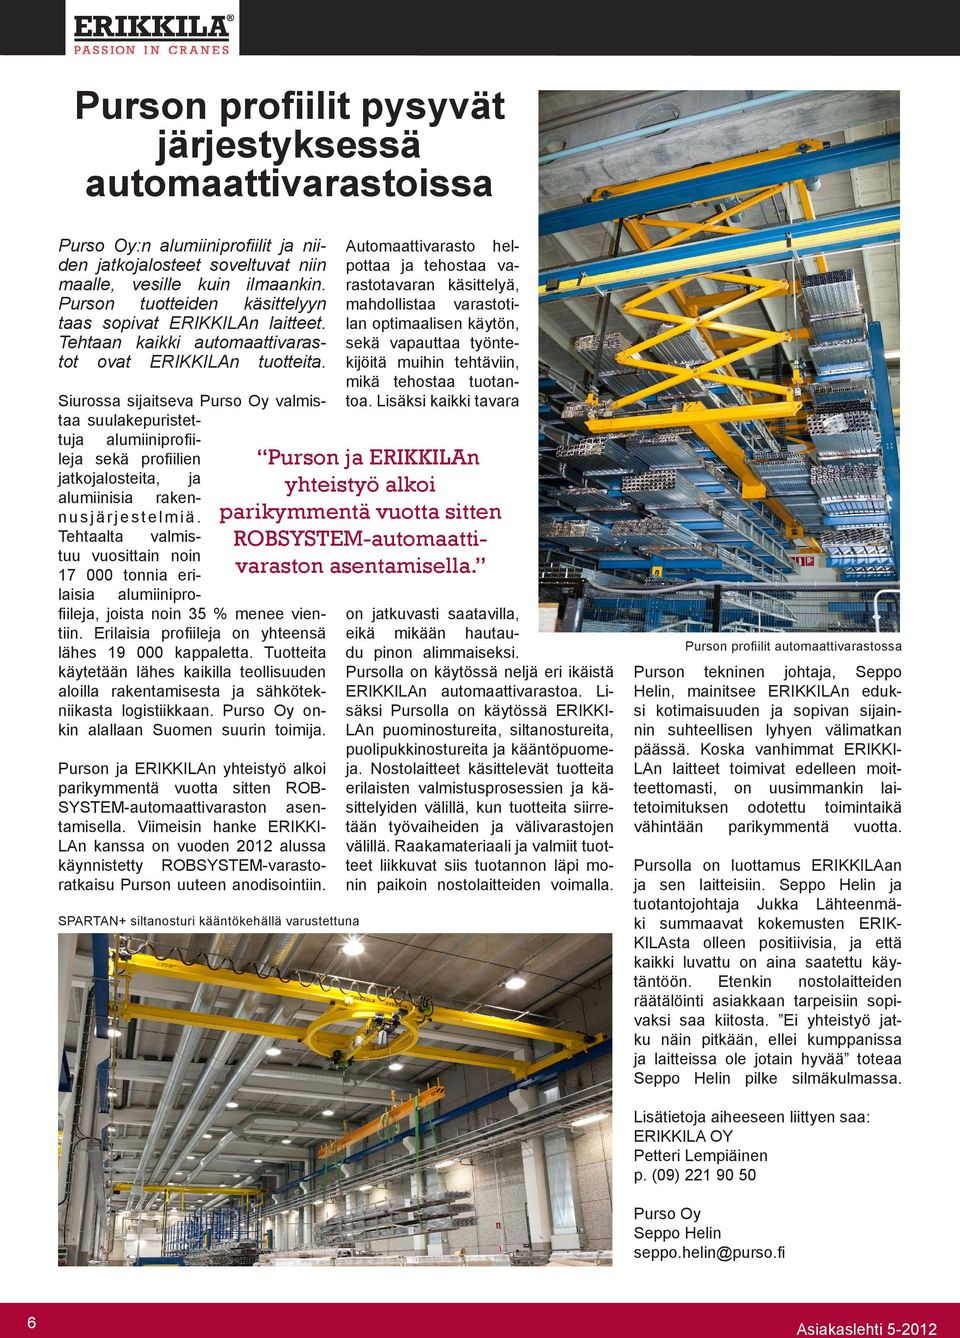 Siurossa sijaitseva Purso Oy valmistaa suulakepuristettuja alumiiniprofiileja sekä profiilien jatkojalosteita, ja alumiinisia rakennusjärjestelmiä.